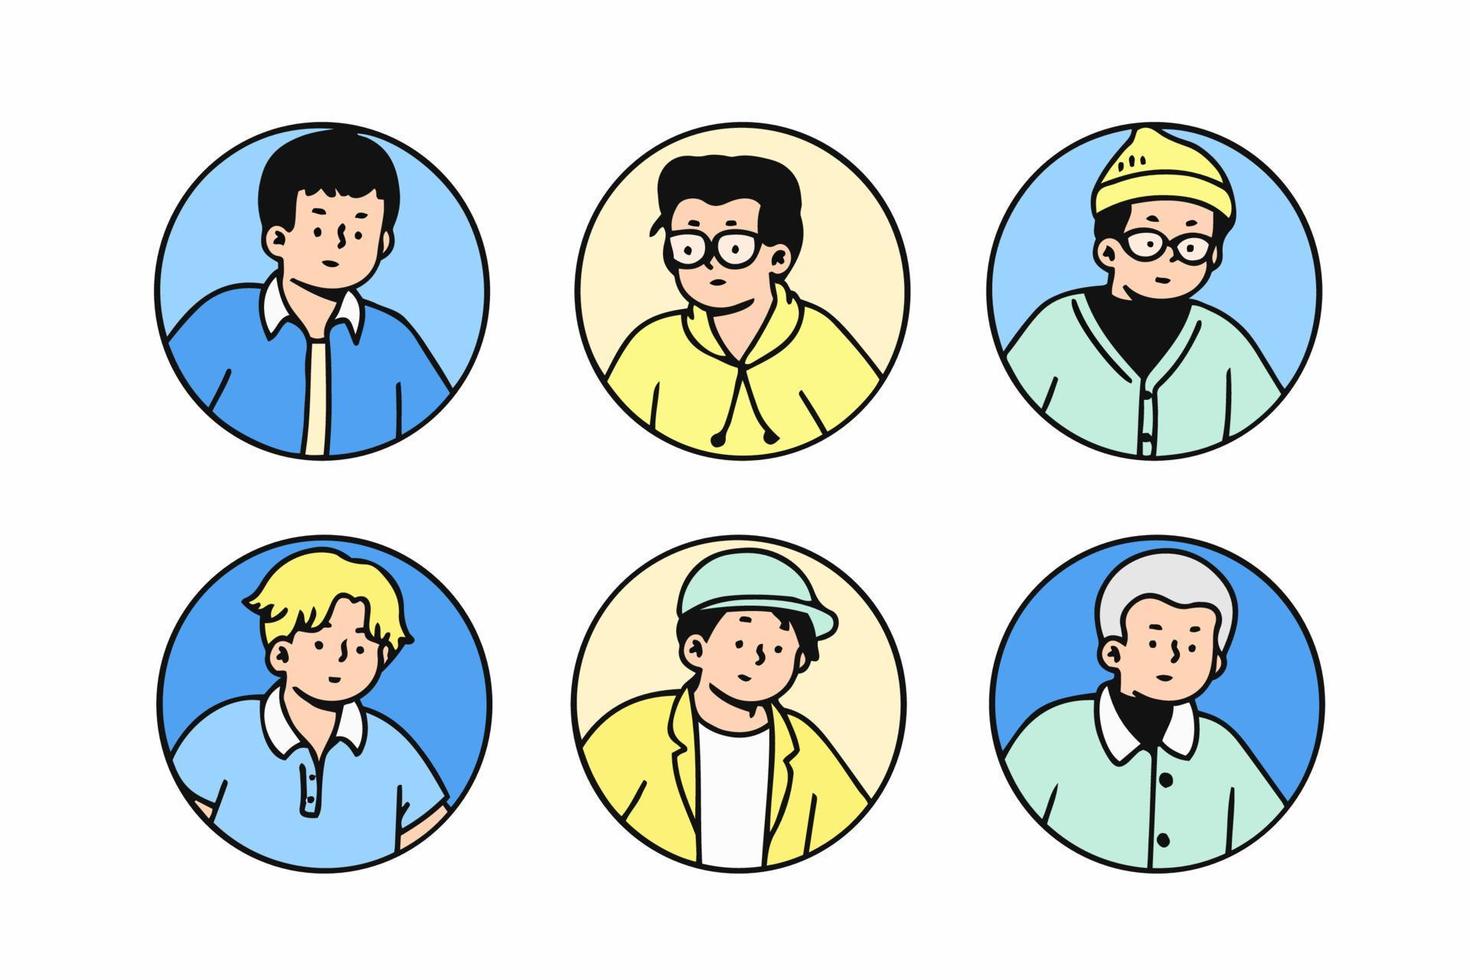 contorno conjunto de perfiles de avatares, trabajadores de oficina, estilo de icono dibujado a mano, diseño de personajes, ilustración vectorial-6 vector